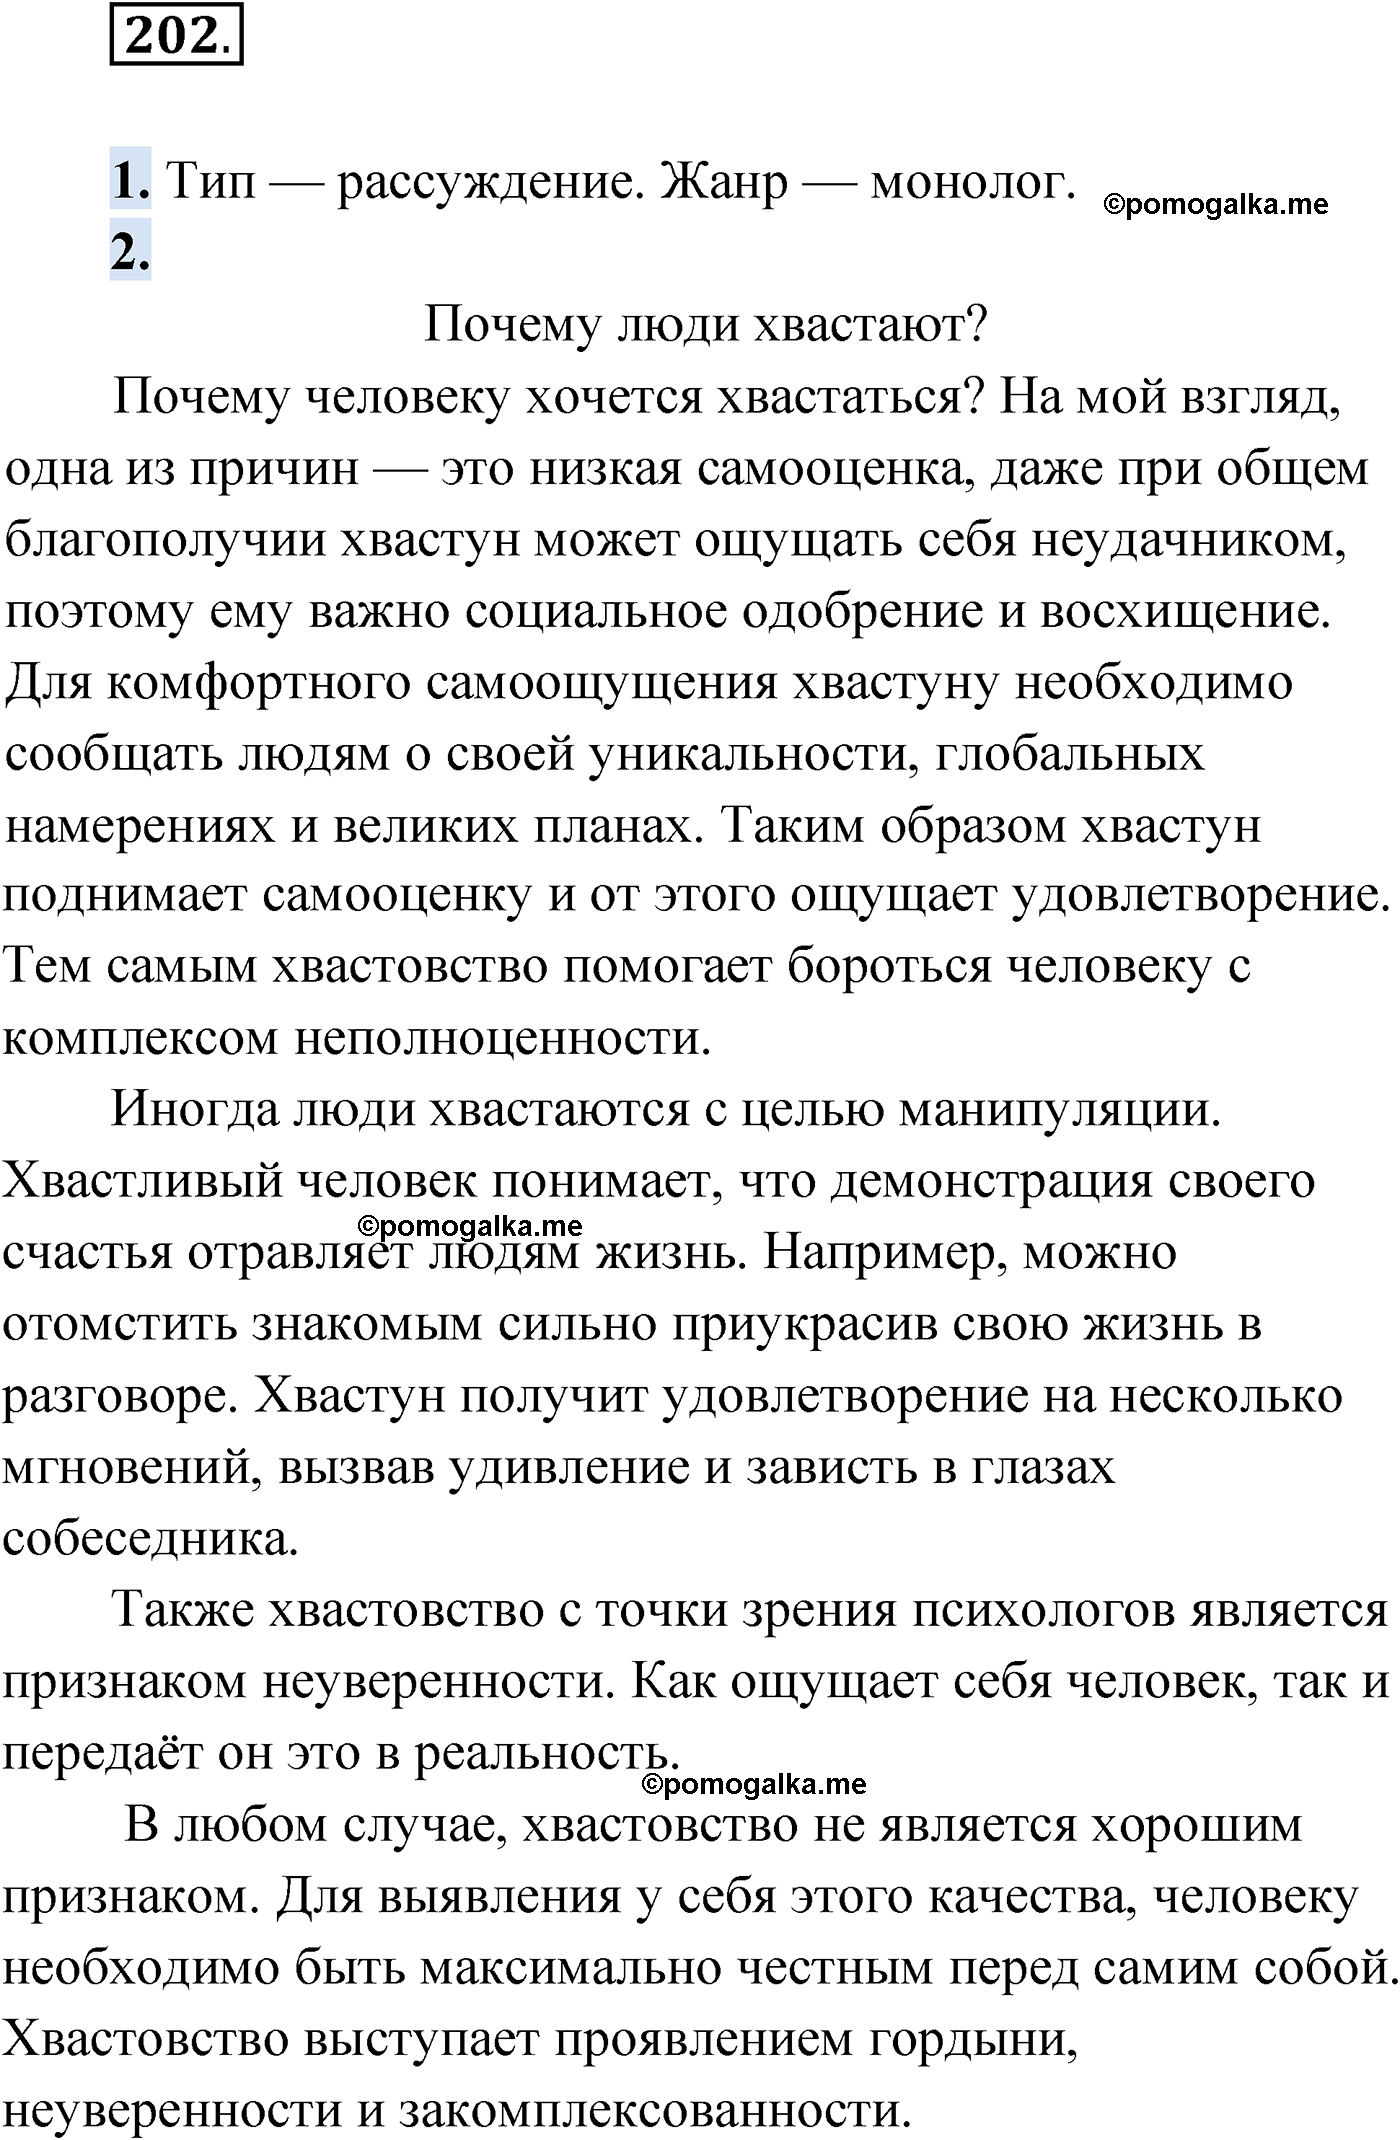 упражнение №202 русский язык 9 класс Мурина 2019 год